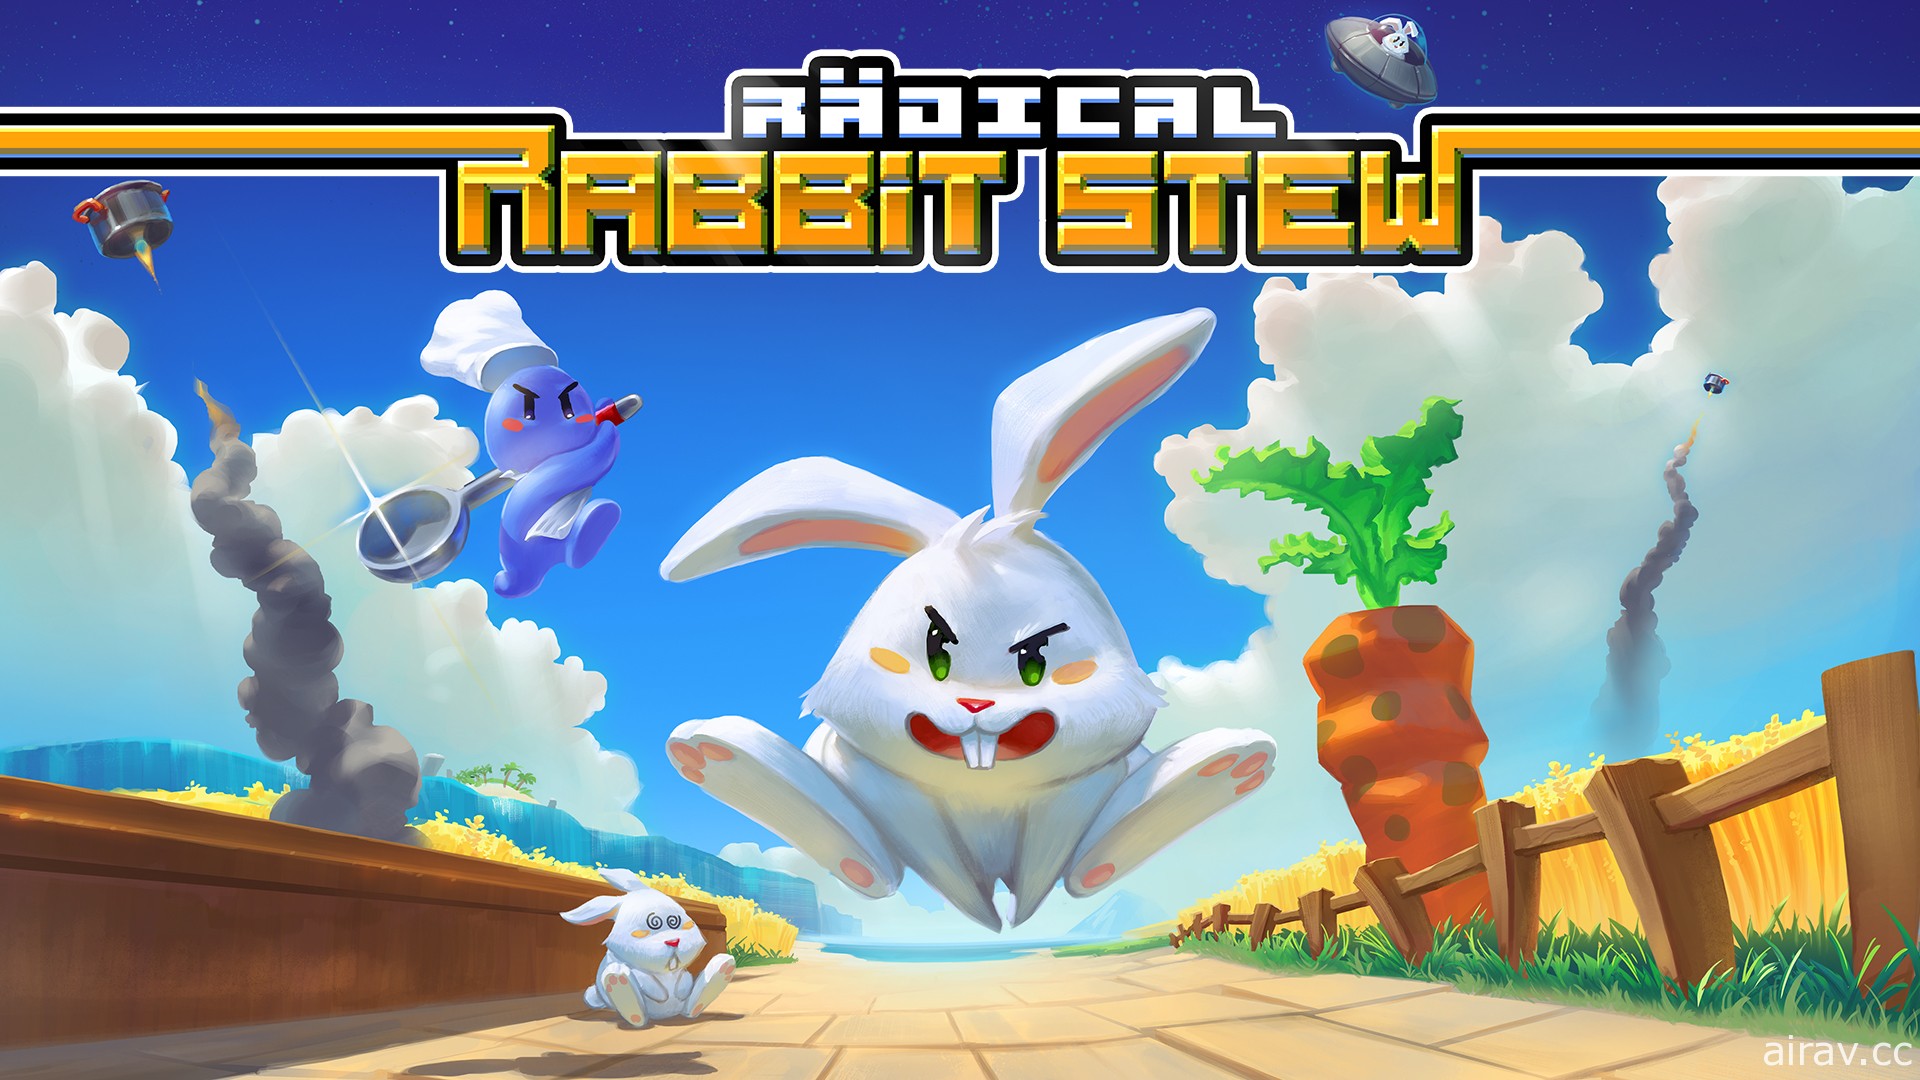 不要吃兔兔！16-bit 风游戏 《Radical Rabbit Stew》中文数位版 9 月上架